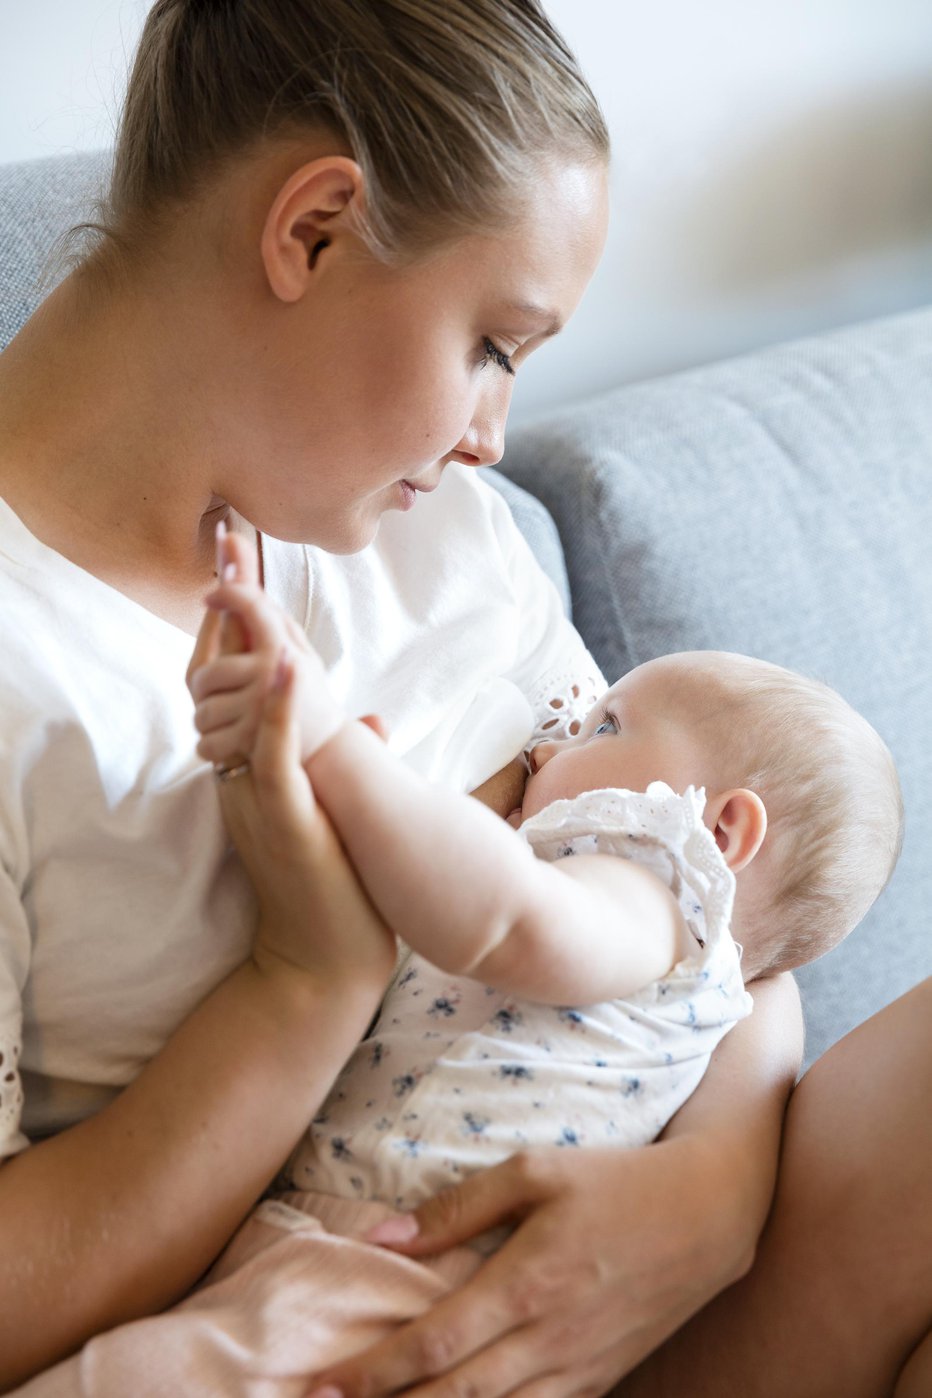 Fotografija: Dojenje je najbolj varen način hranjenja dojenčkov in najboljši način, da doječa mati in njen otrok ohranita zdravje. FOTO: Kjekol/Getty Images